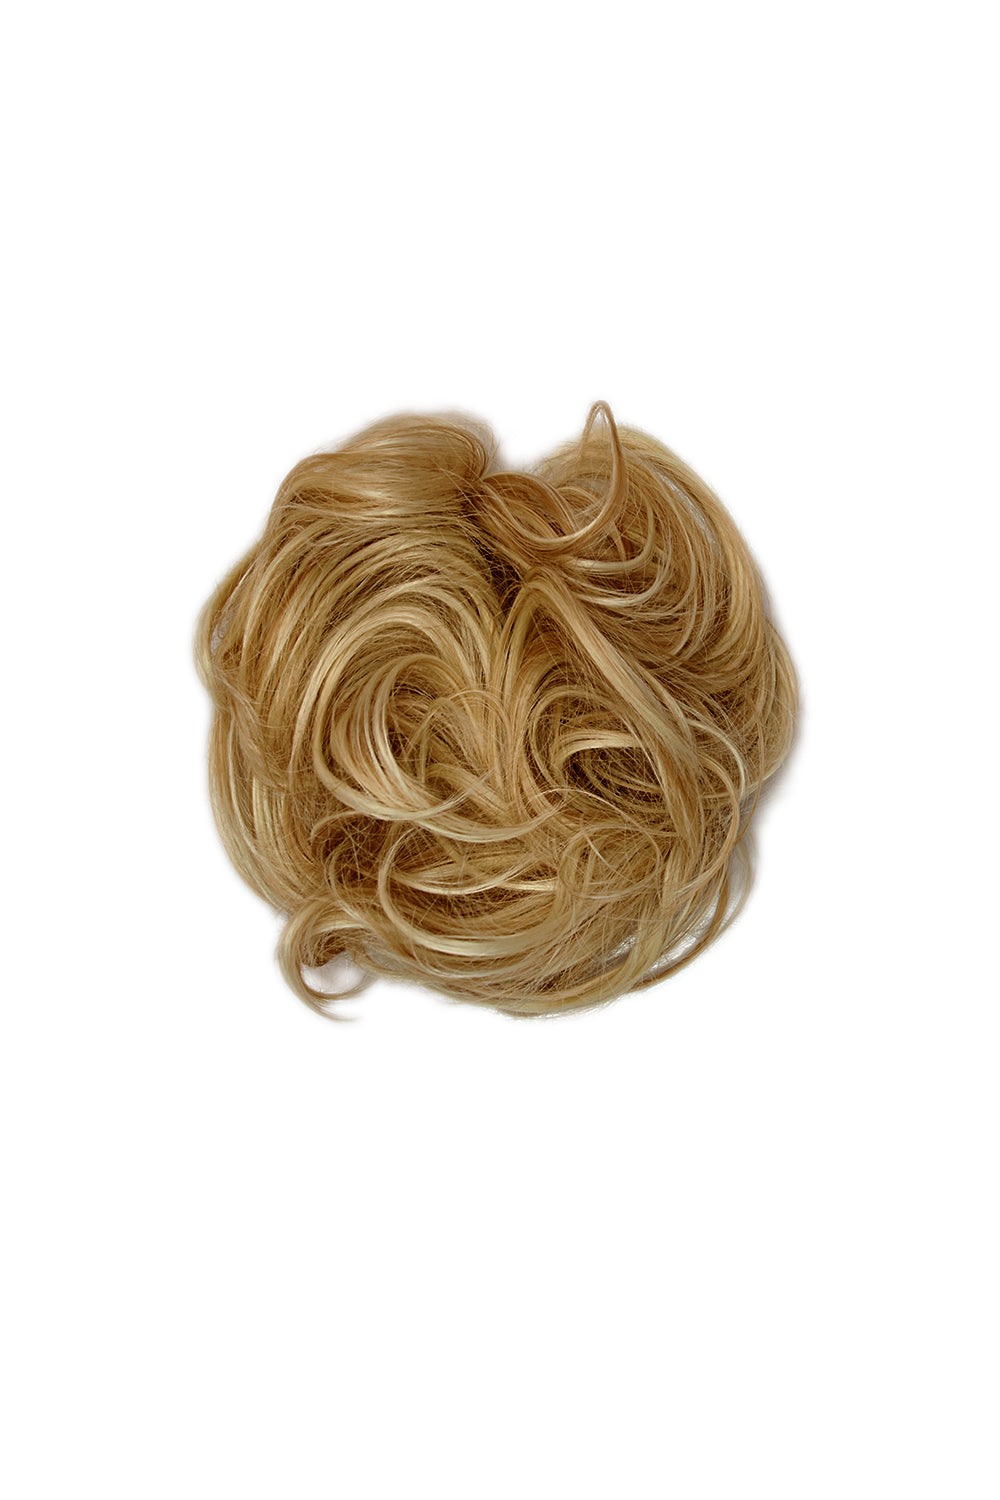 Premium Messy Bun Hair Up Scrunchie - LullaBellz  - Harvest Blonde